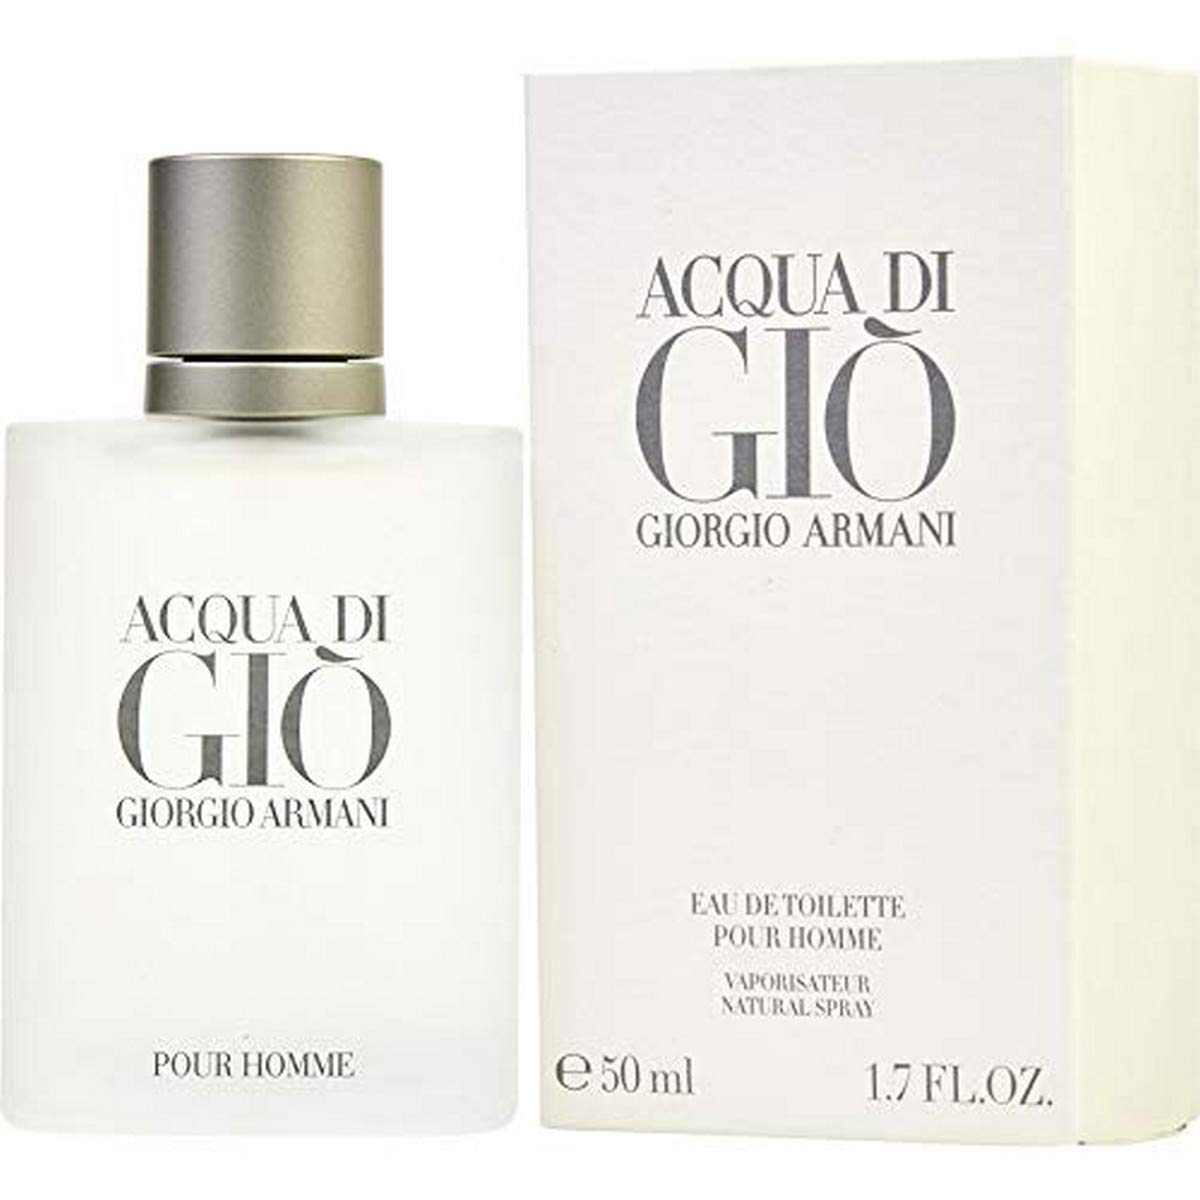 Giorgio Armani Acqua Di Gio Edt For Men - Perfume Singapore